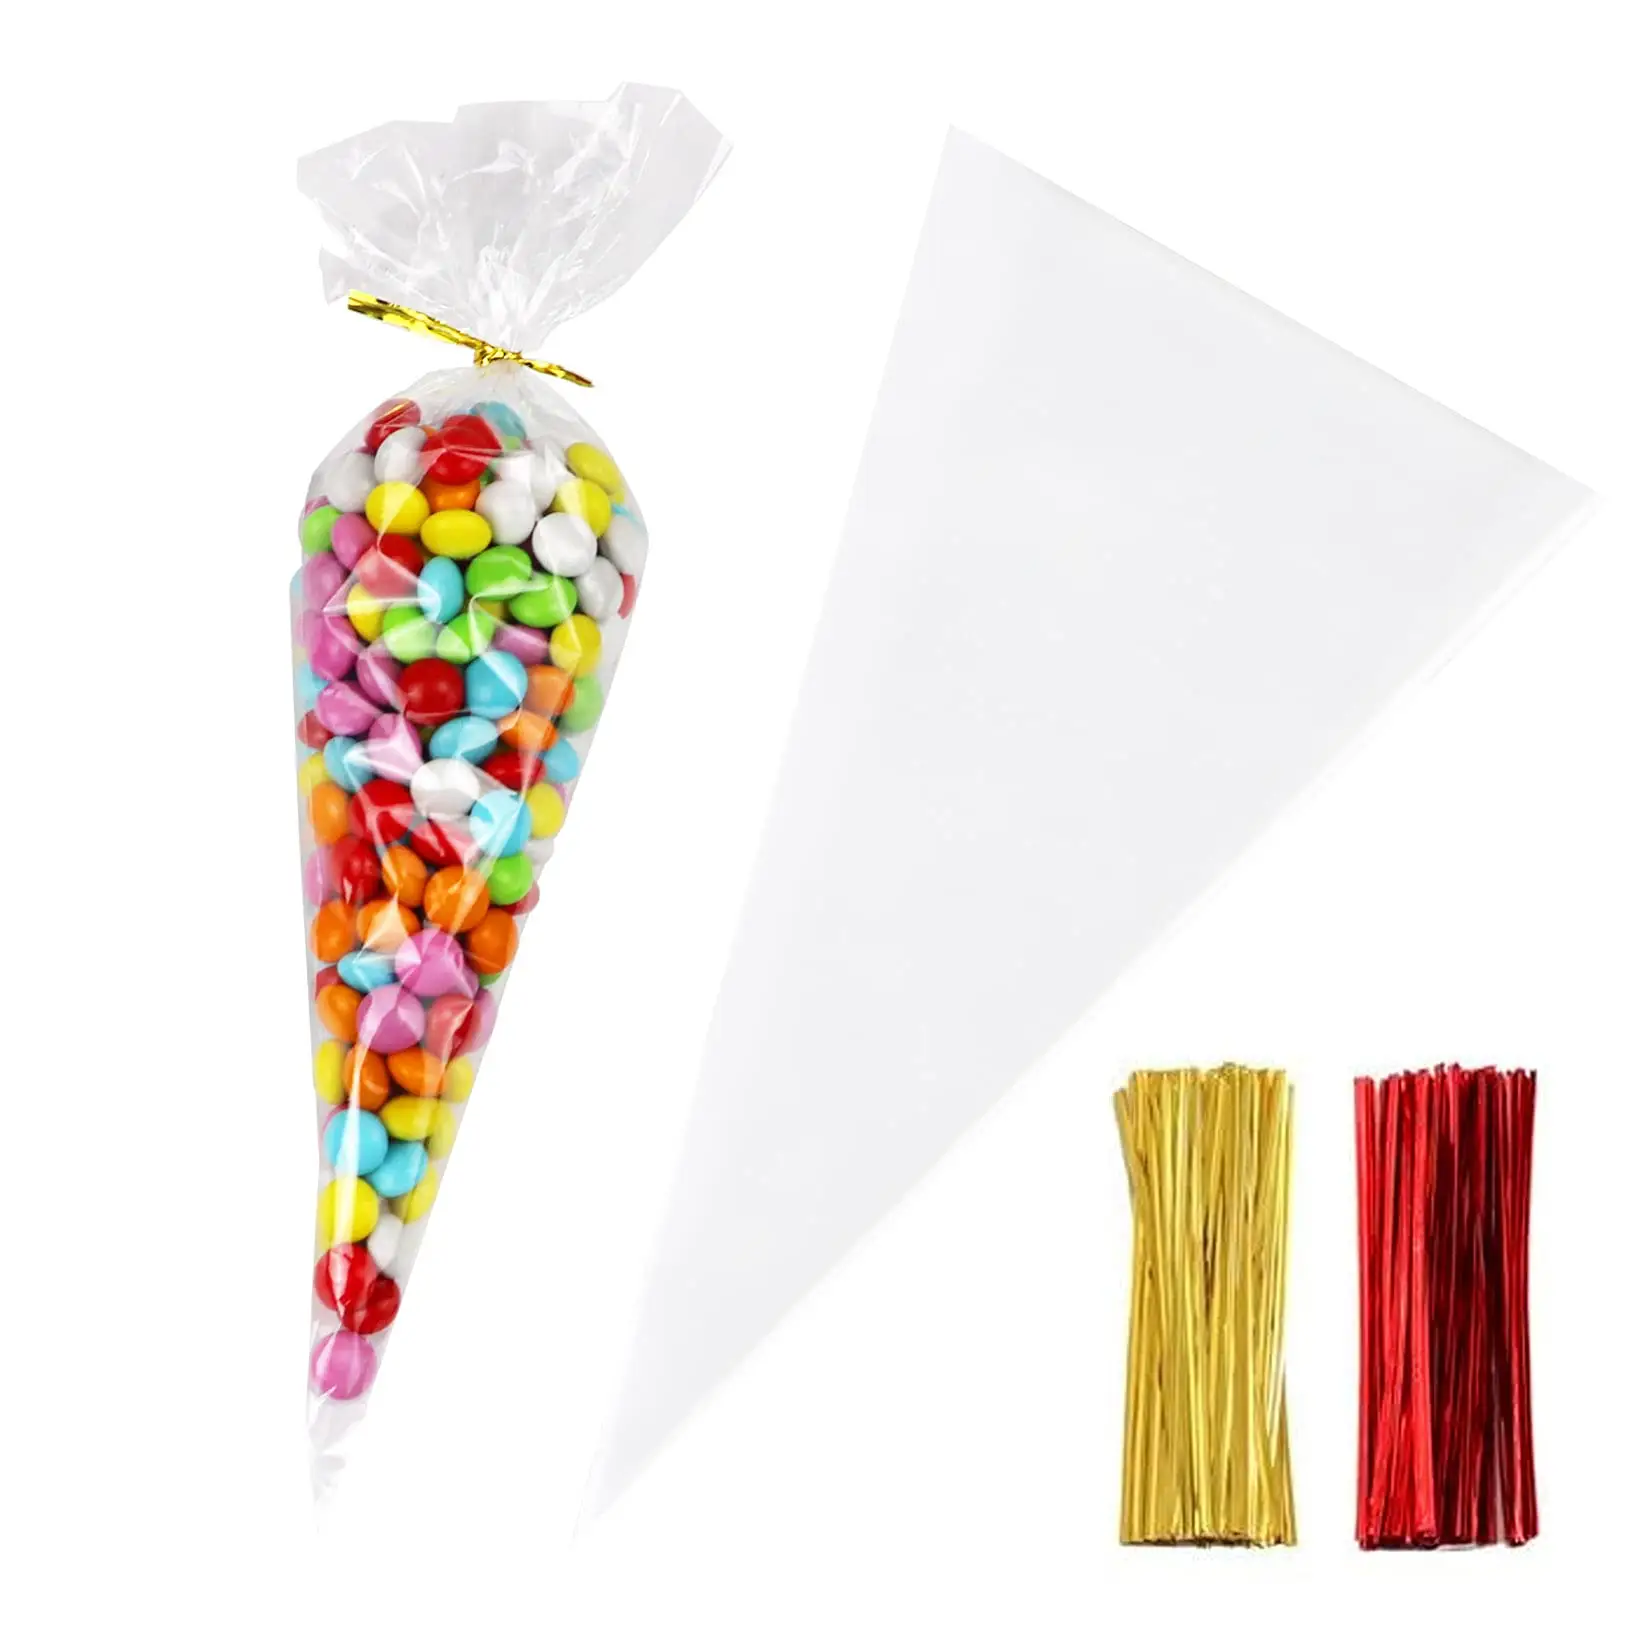 Bolsas de embalaje transparentes para decoración de fiestas de cumpleaños, dulces, celofán, dulces, de almacenamiento, cónico